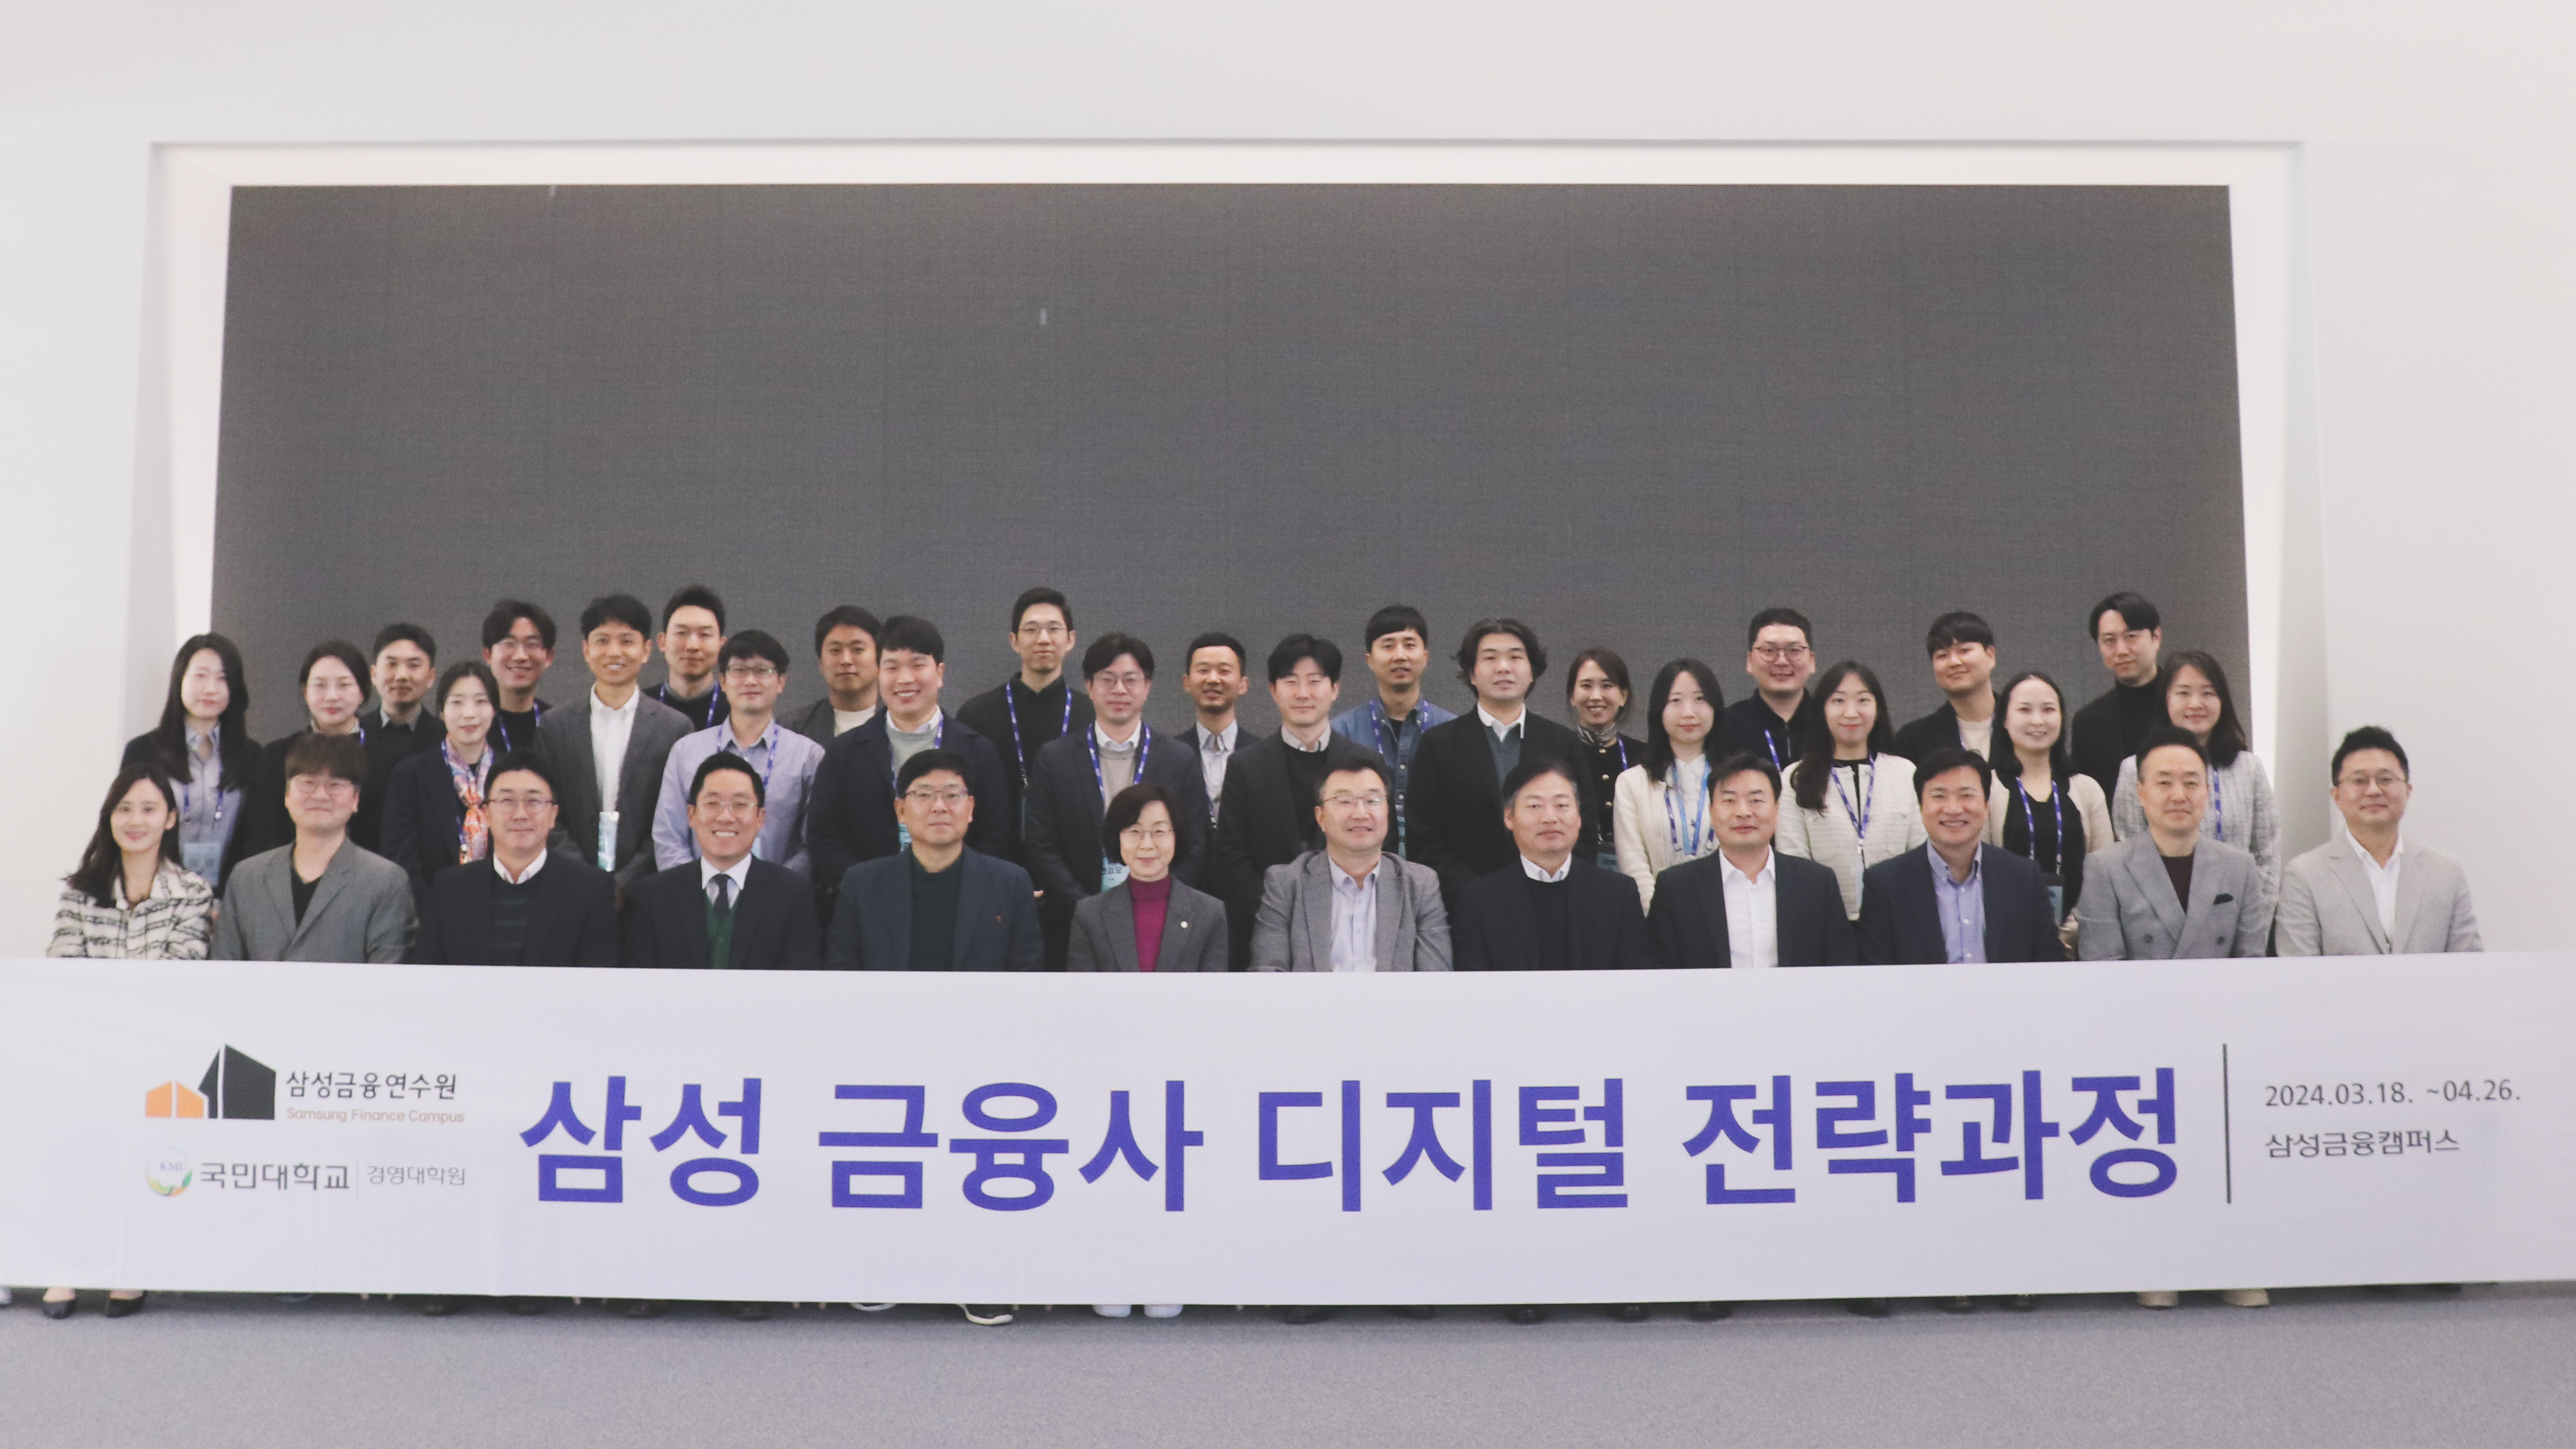 국민대-삼성금융네트웍스, ‘삼성 금융사 디지털 전략과정’ 제 3기 입과식 개최